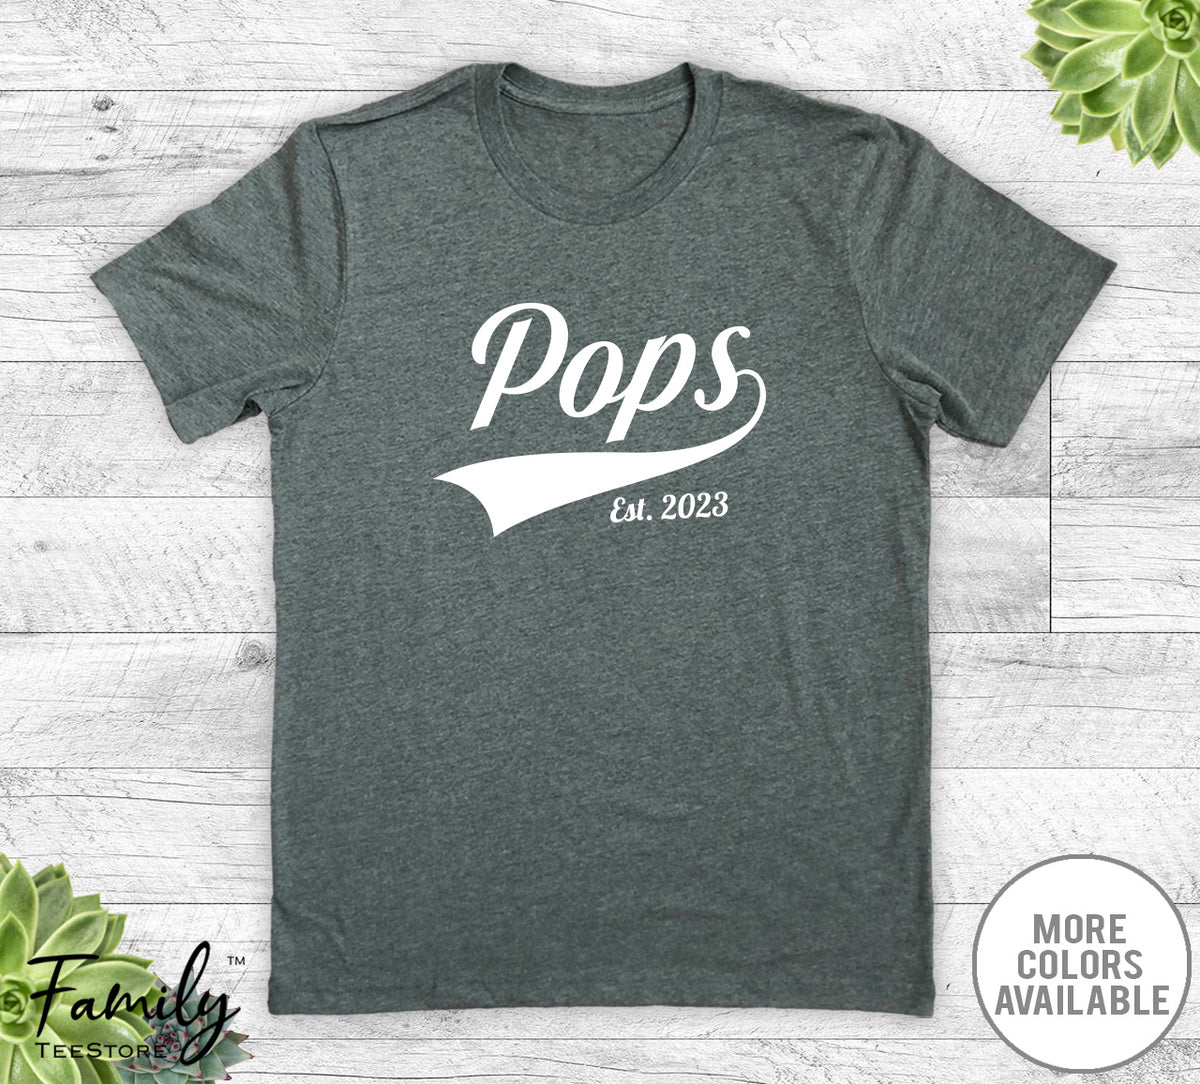 Pops Est. 2023 - Unisex T-shirt - New Pops Shirt - Pops To Be Gift